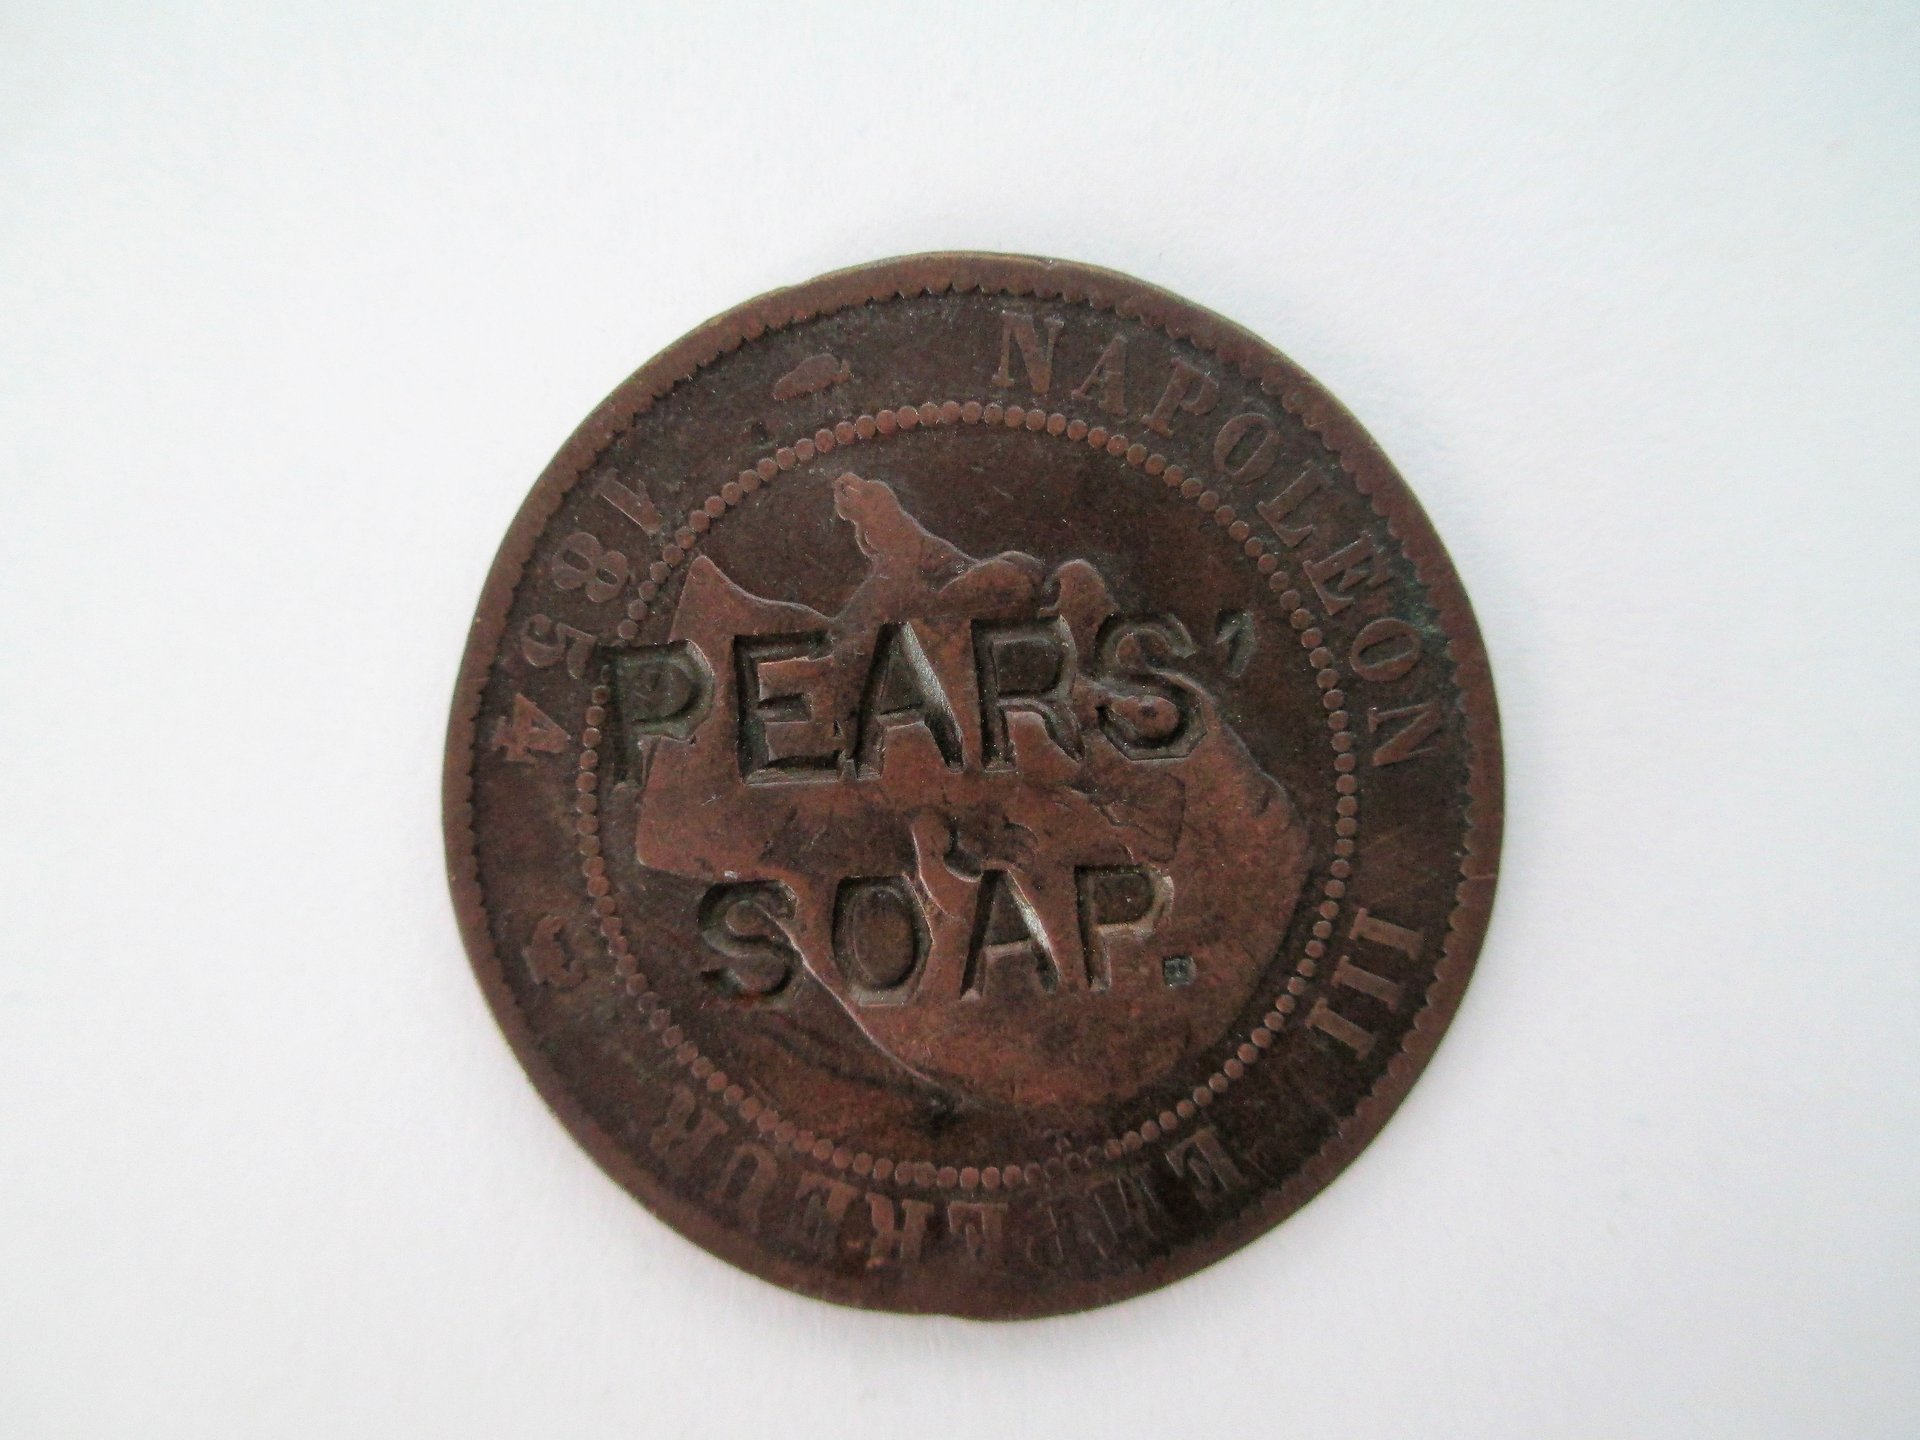 Pears Soap 1.JPG